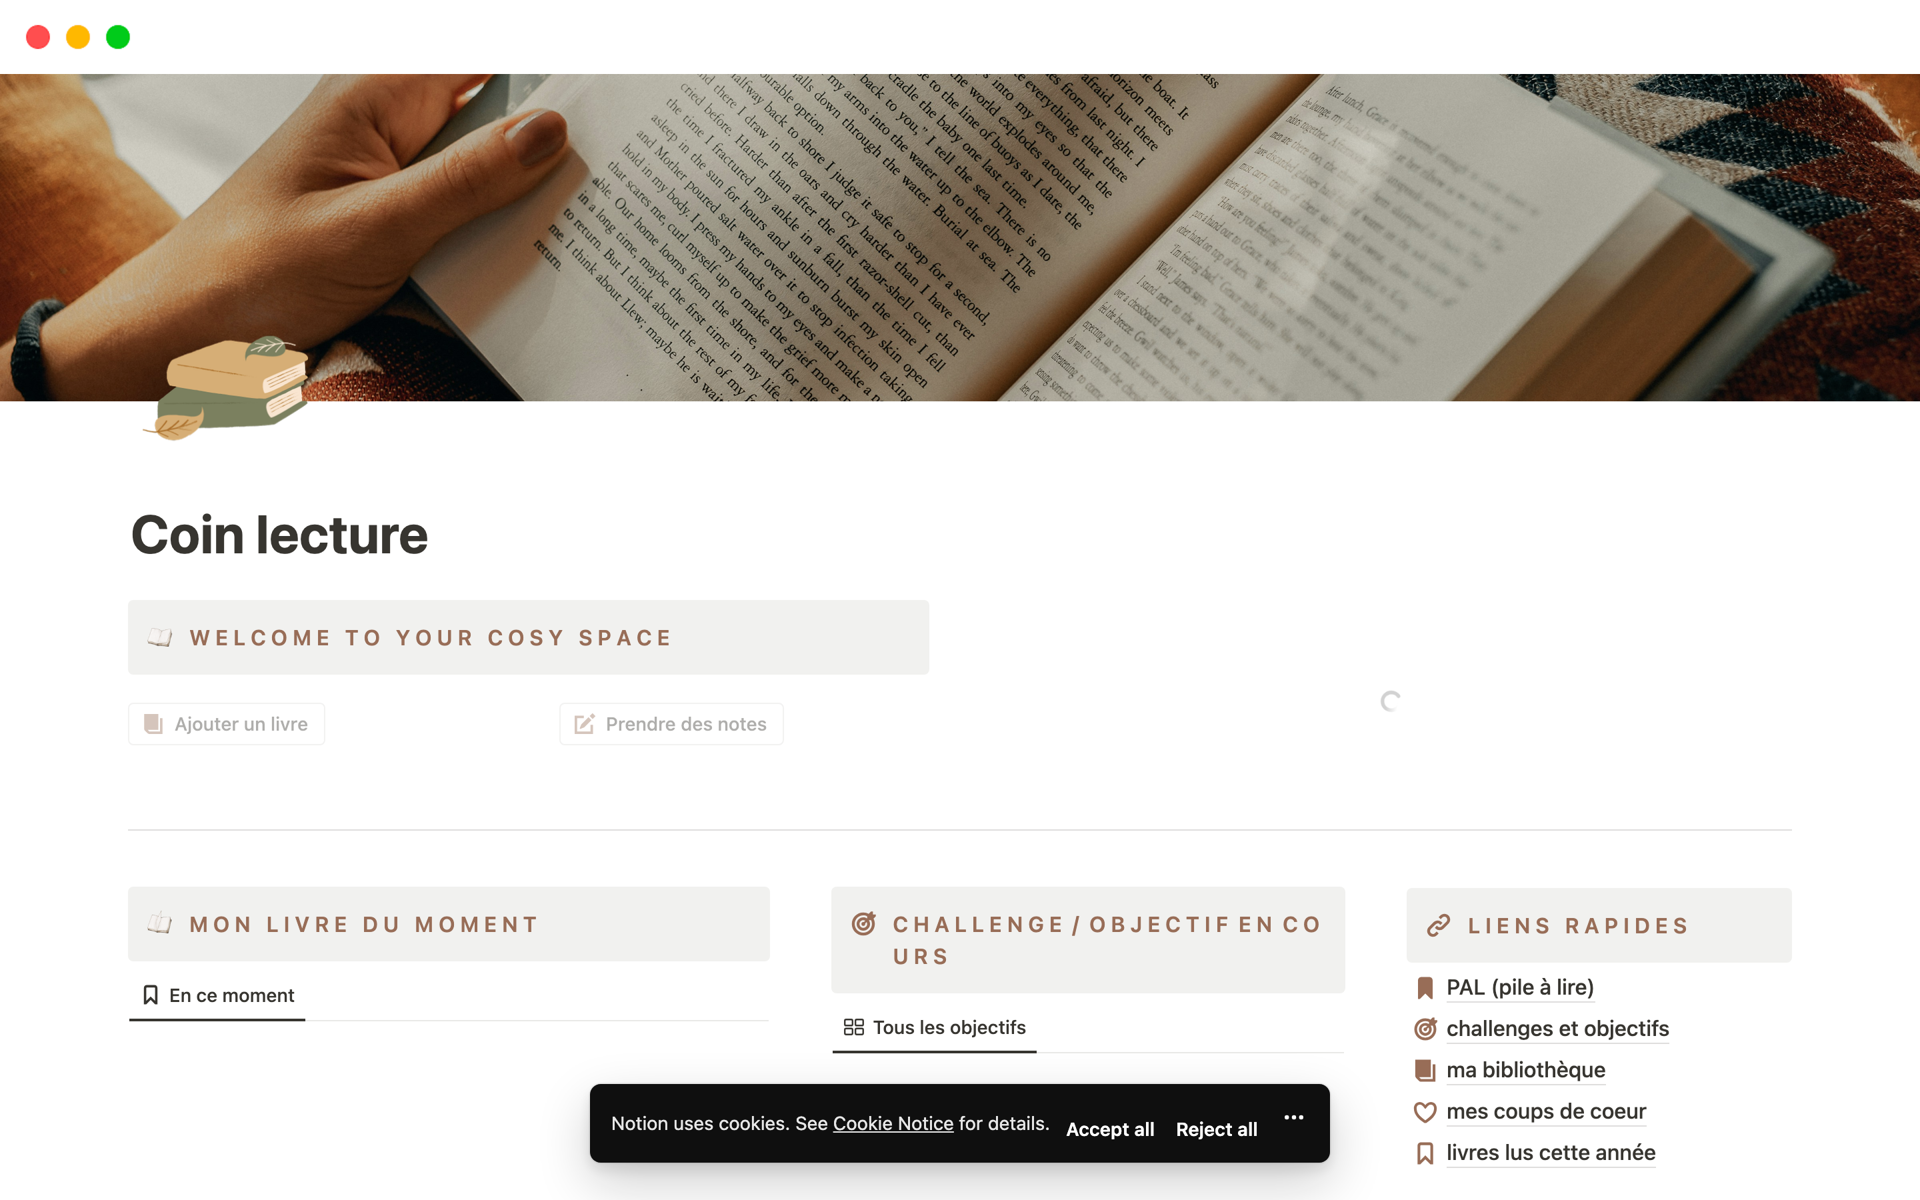 Construis ta propre bibliothèque numérique avec cette page Notion dédiée à tes lectures, pour te motiver à lire encore + 📚